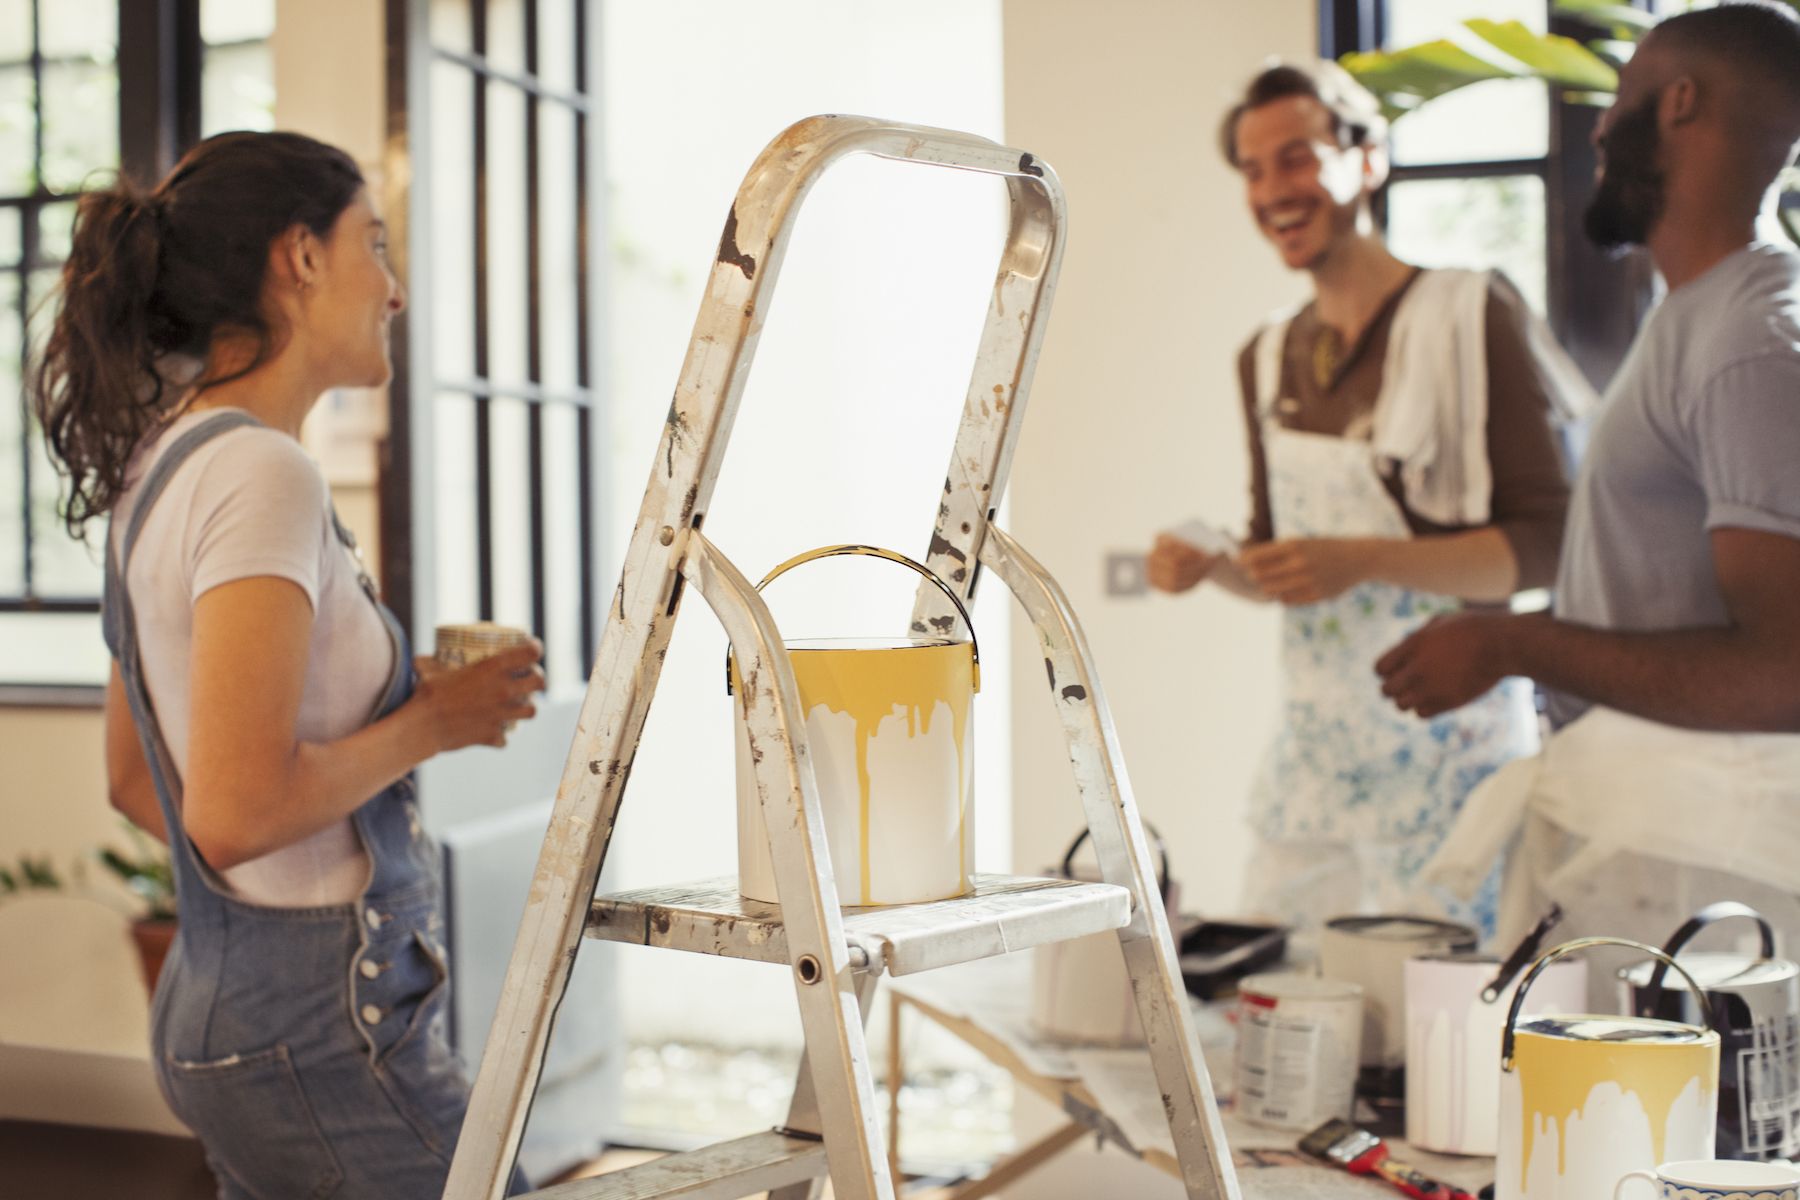 Estas tendencias de pintura serán enormes en 2019, según Pinterest